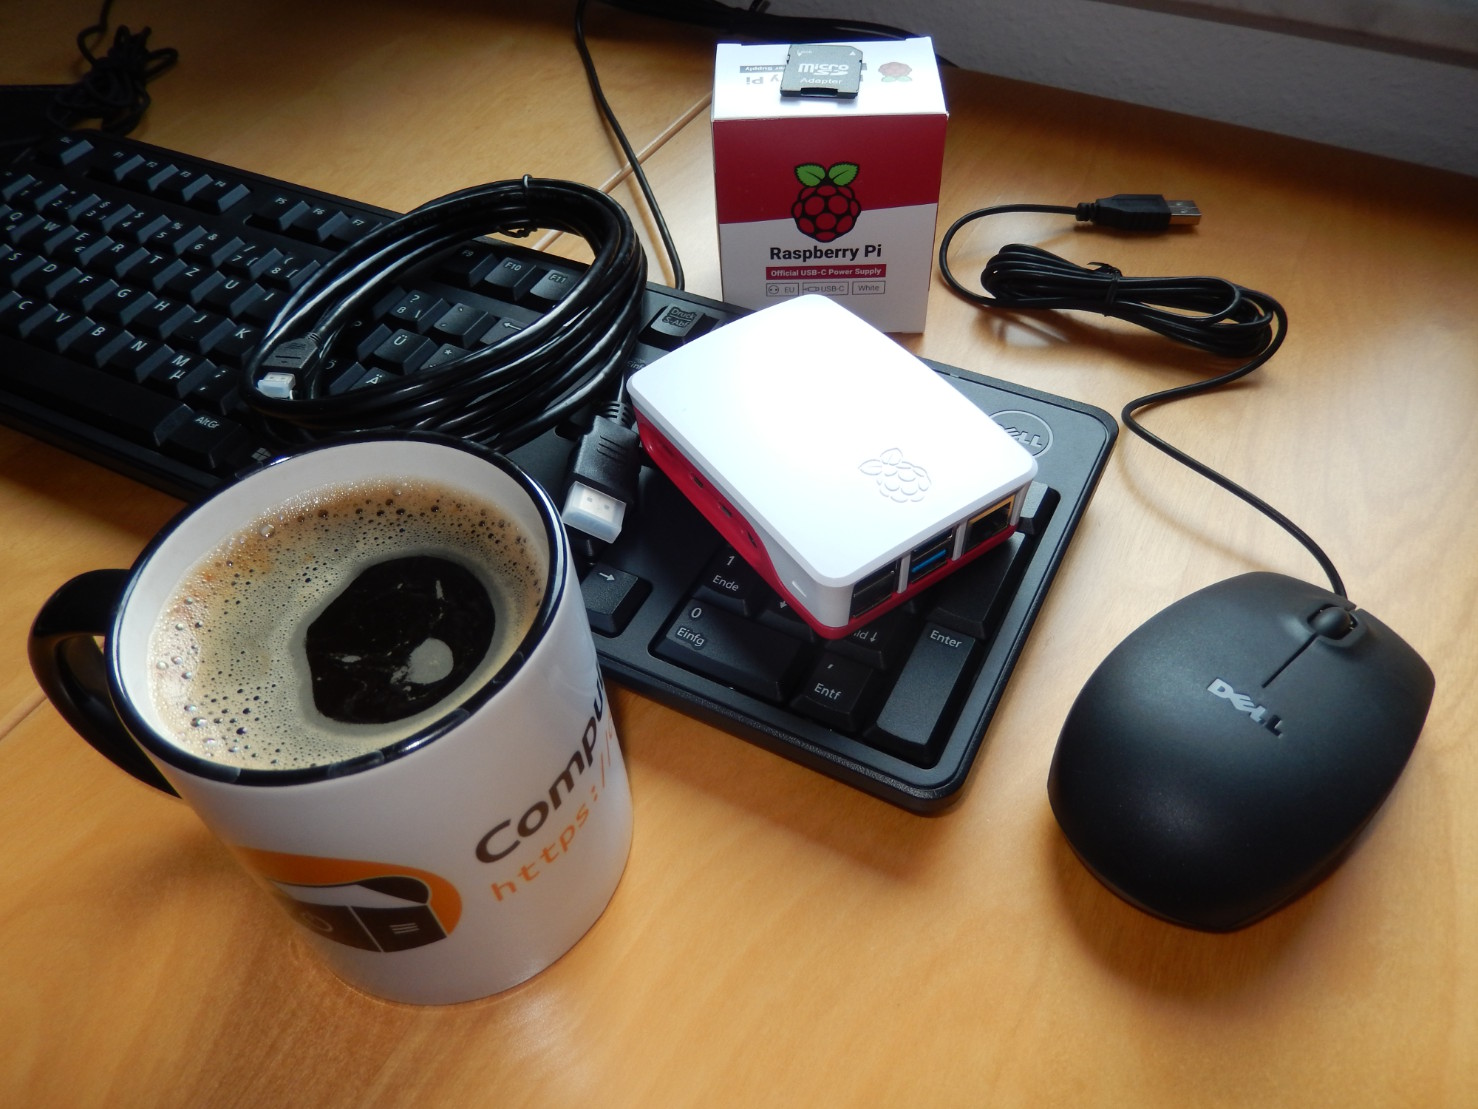 Eine Tasse mit dem „Computertruhe“-Logo und -Schriftzug, die mit Kaffee gefüllt ist. Zusätzlich liegen auf dem Tisch eine Tastatur, Maus, ein HDMI-Kabel, ein verpacktes Netzteil und ein „Raspberry Pi“ in einem Gehäuse.